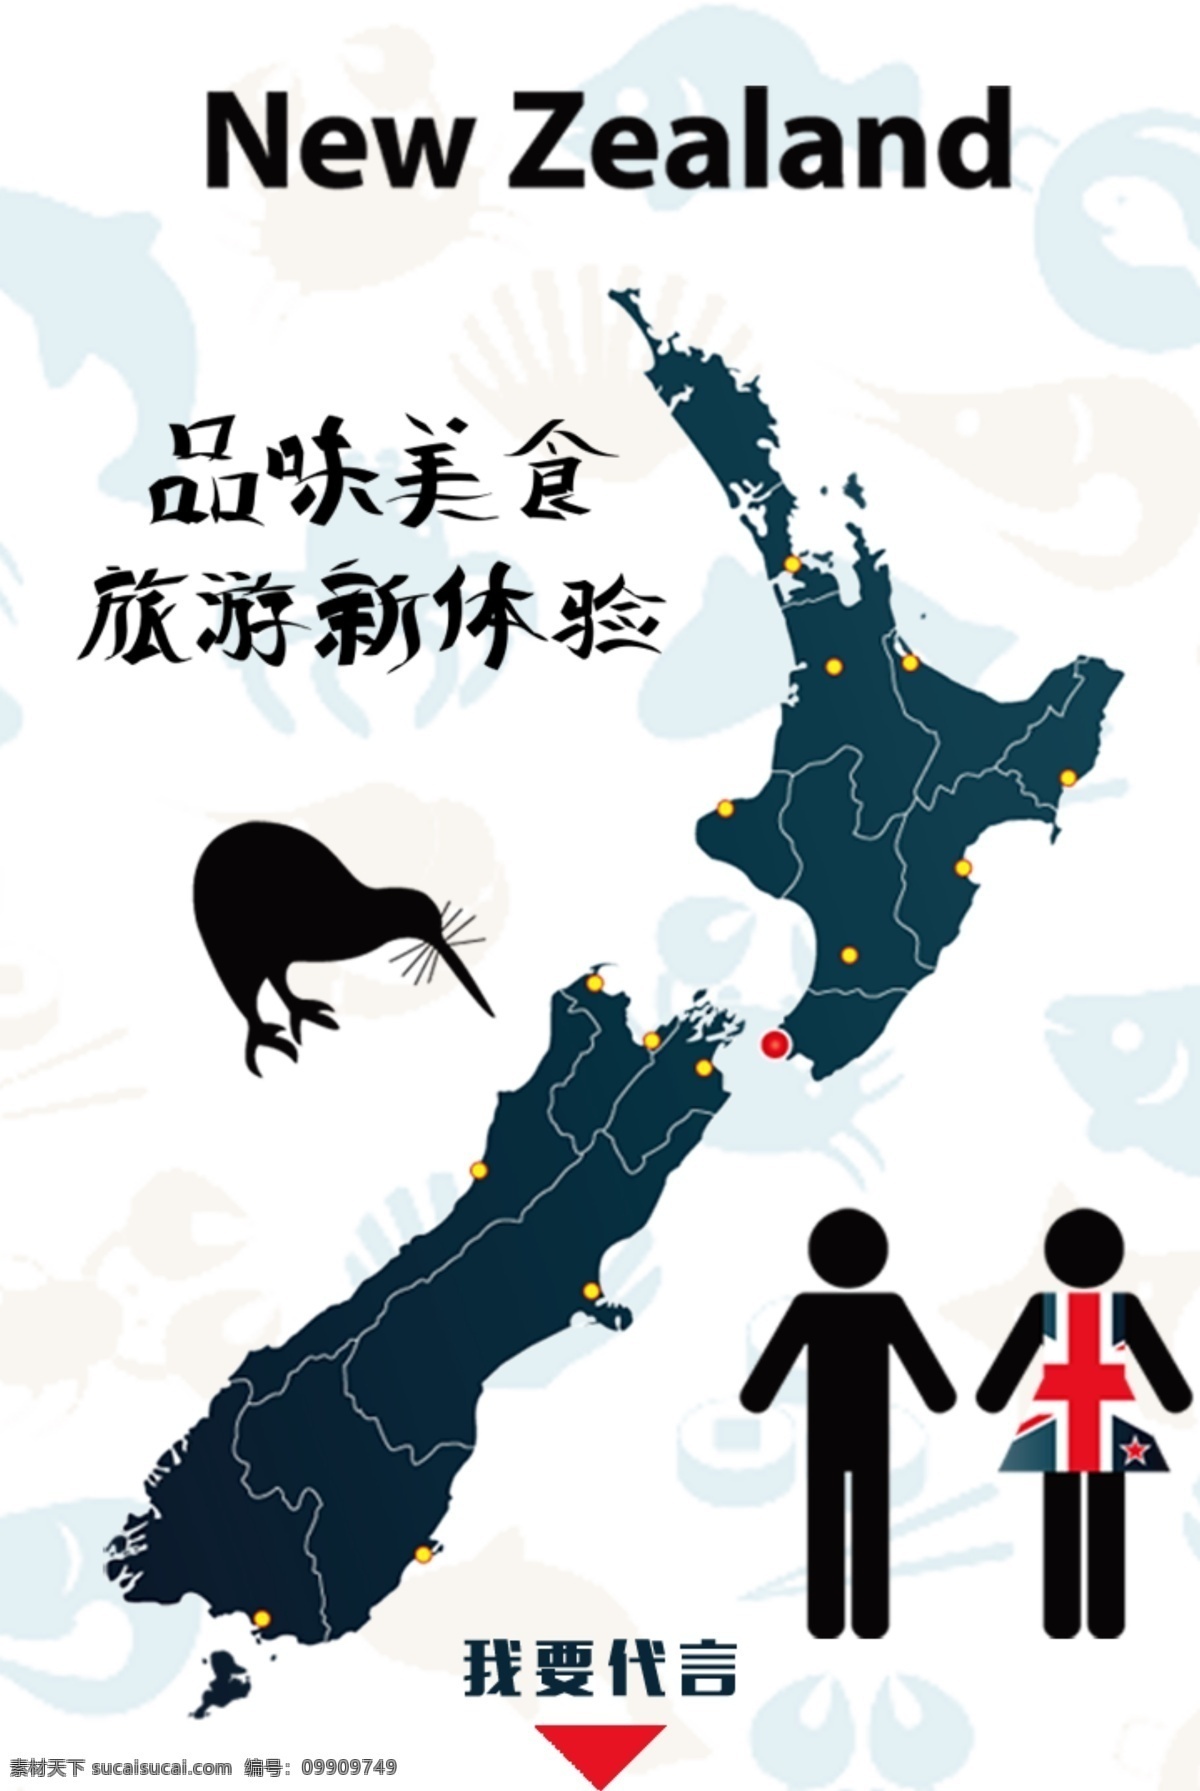 品味新西兰 品味 新西兰 旅游 体验 代言 吉祥物 分层